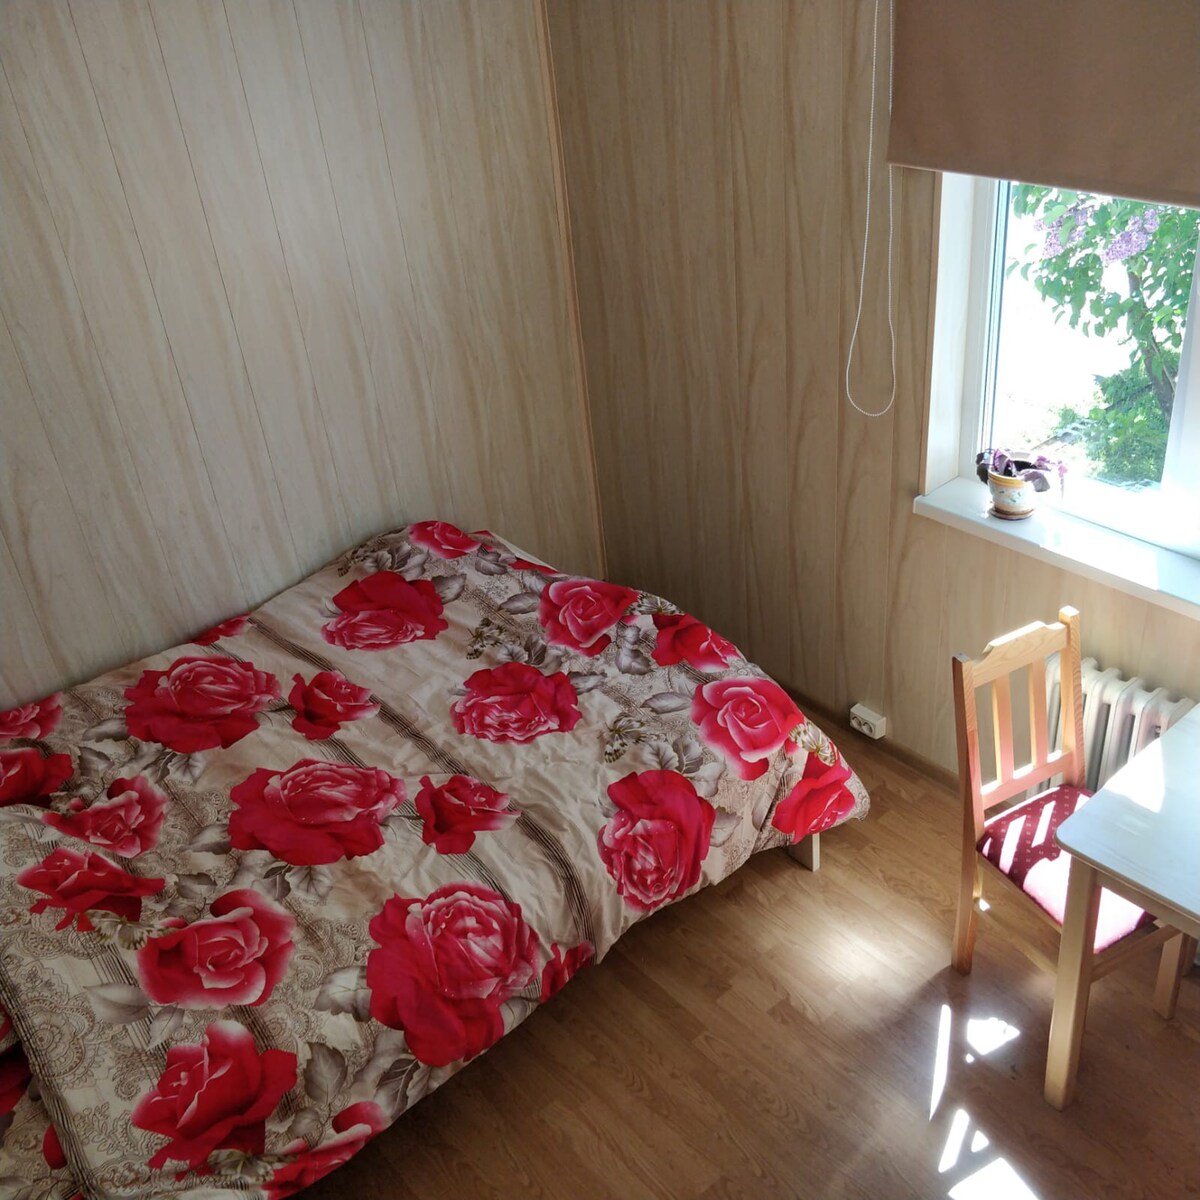 One room in Viljandi 
Kanepi accommodation